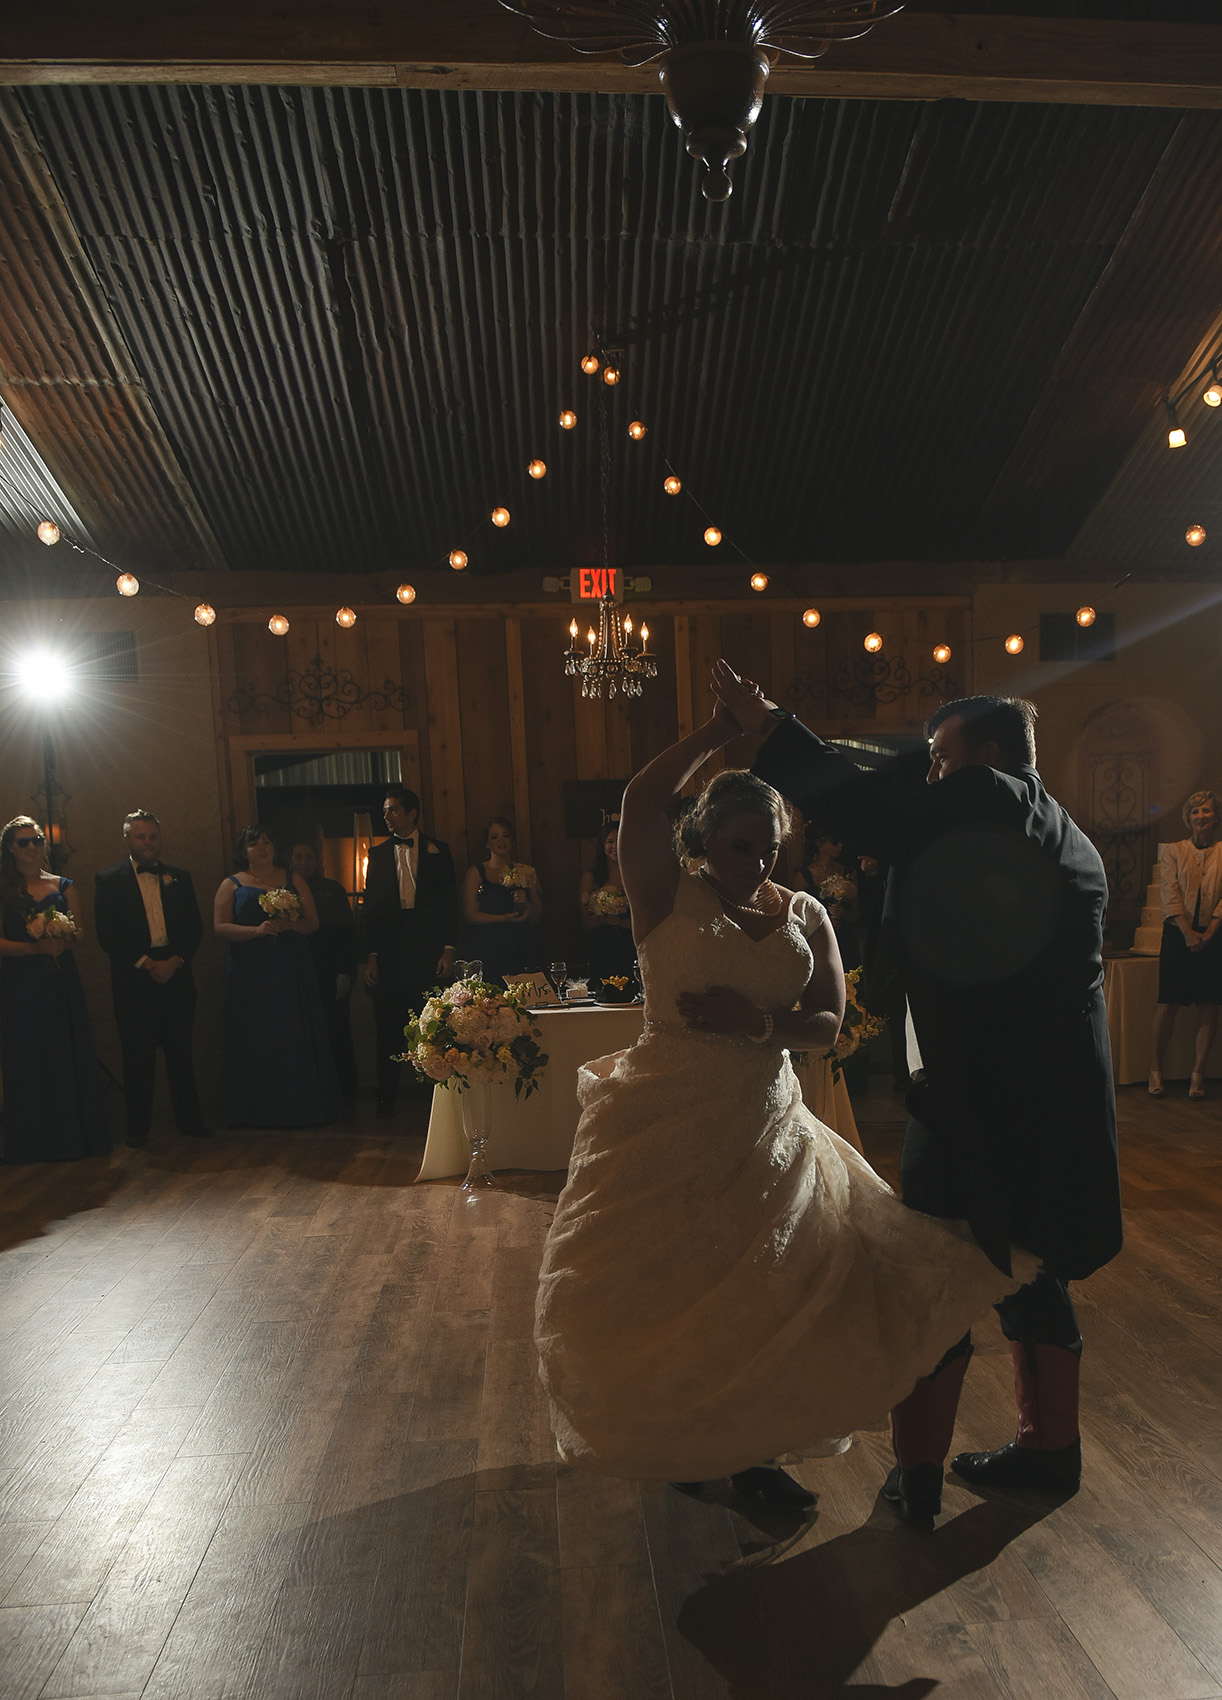 moffitt-oaks-houston-wedding-venue-barn-dance-floor-lighting